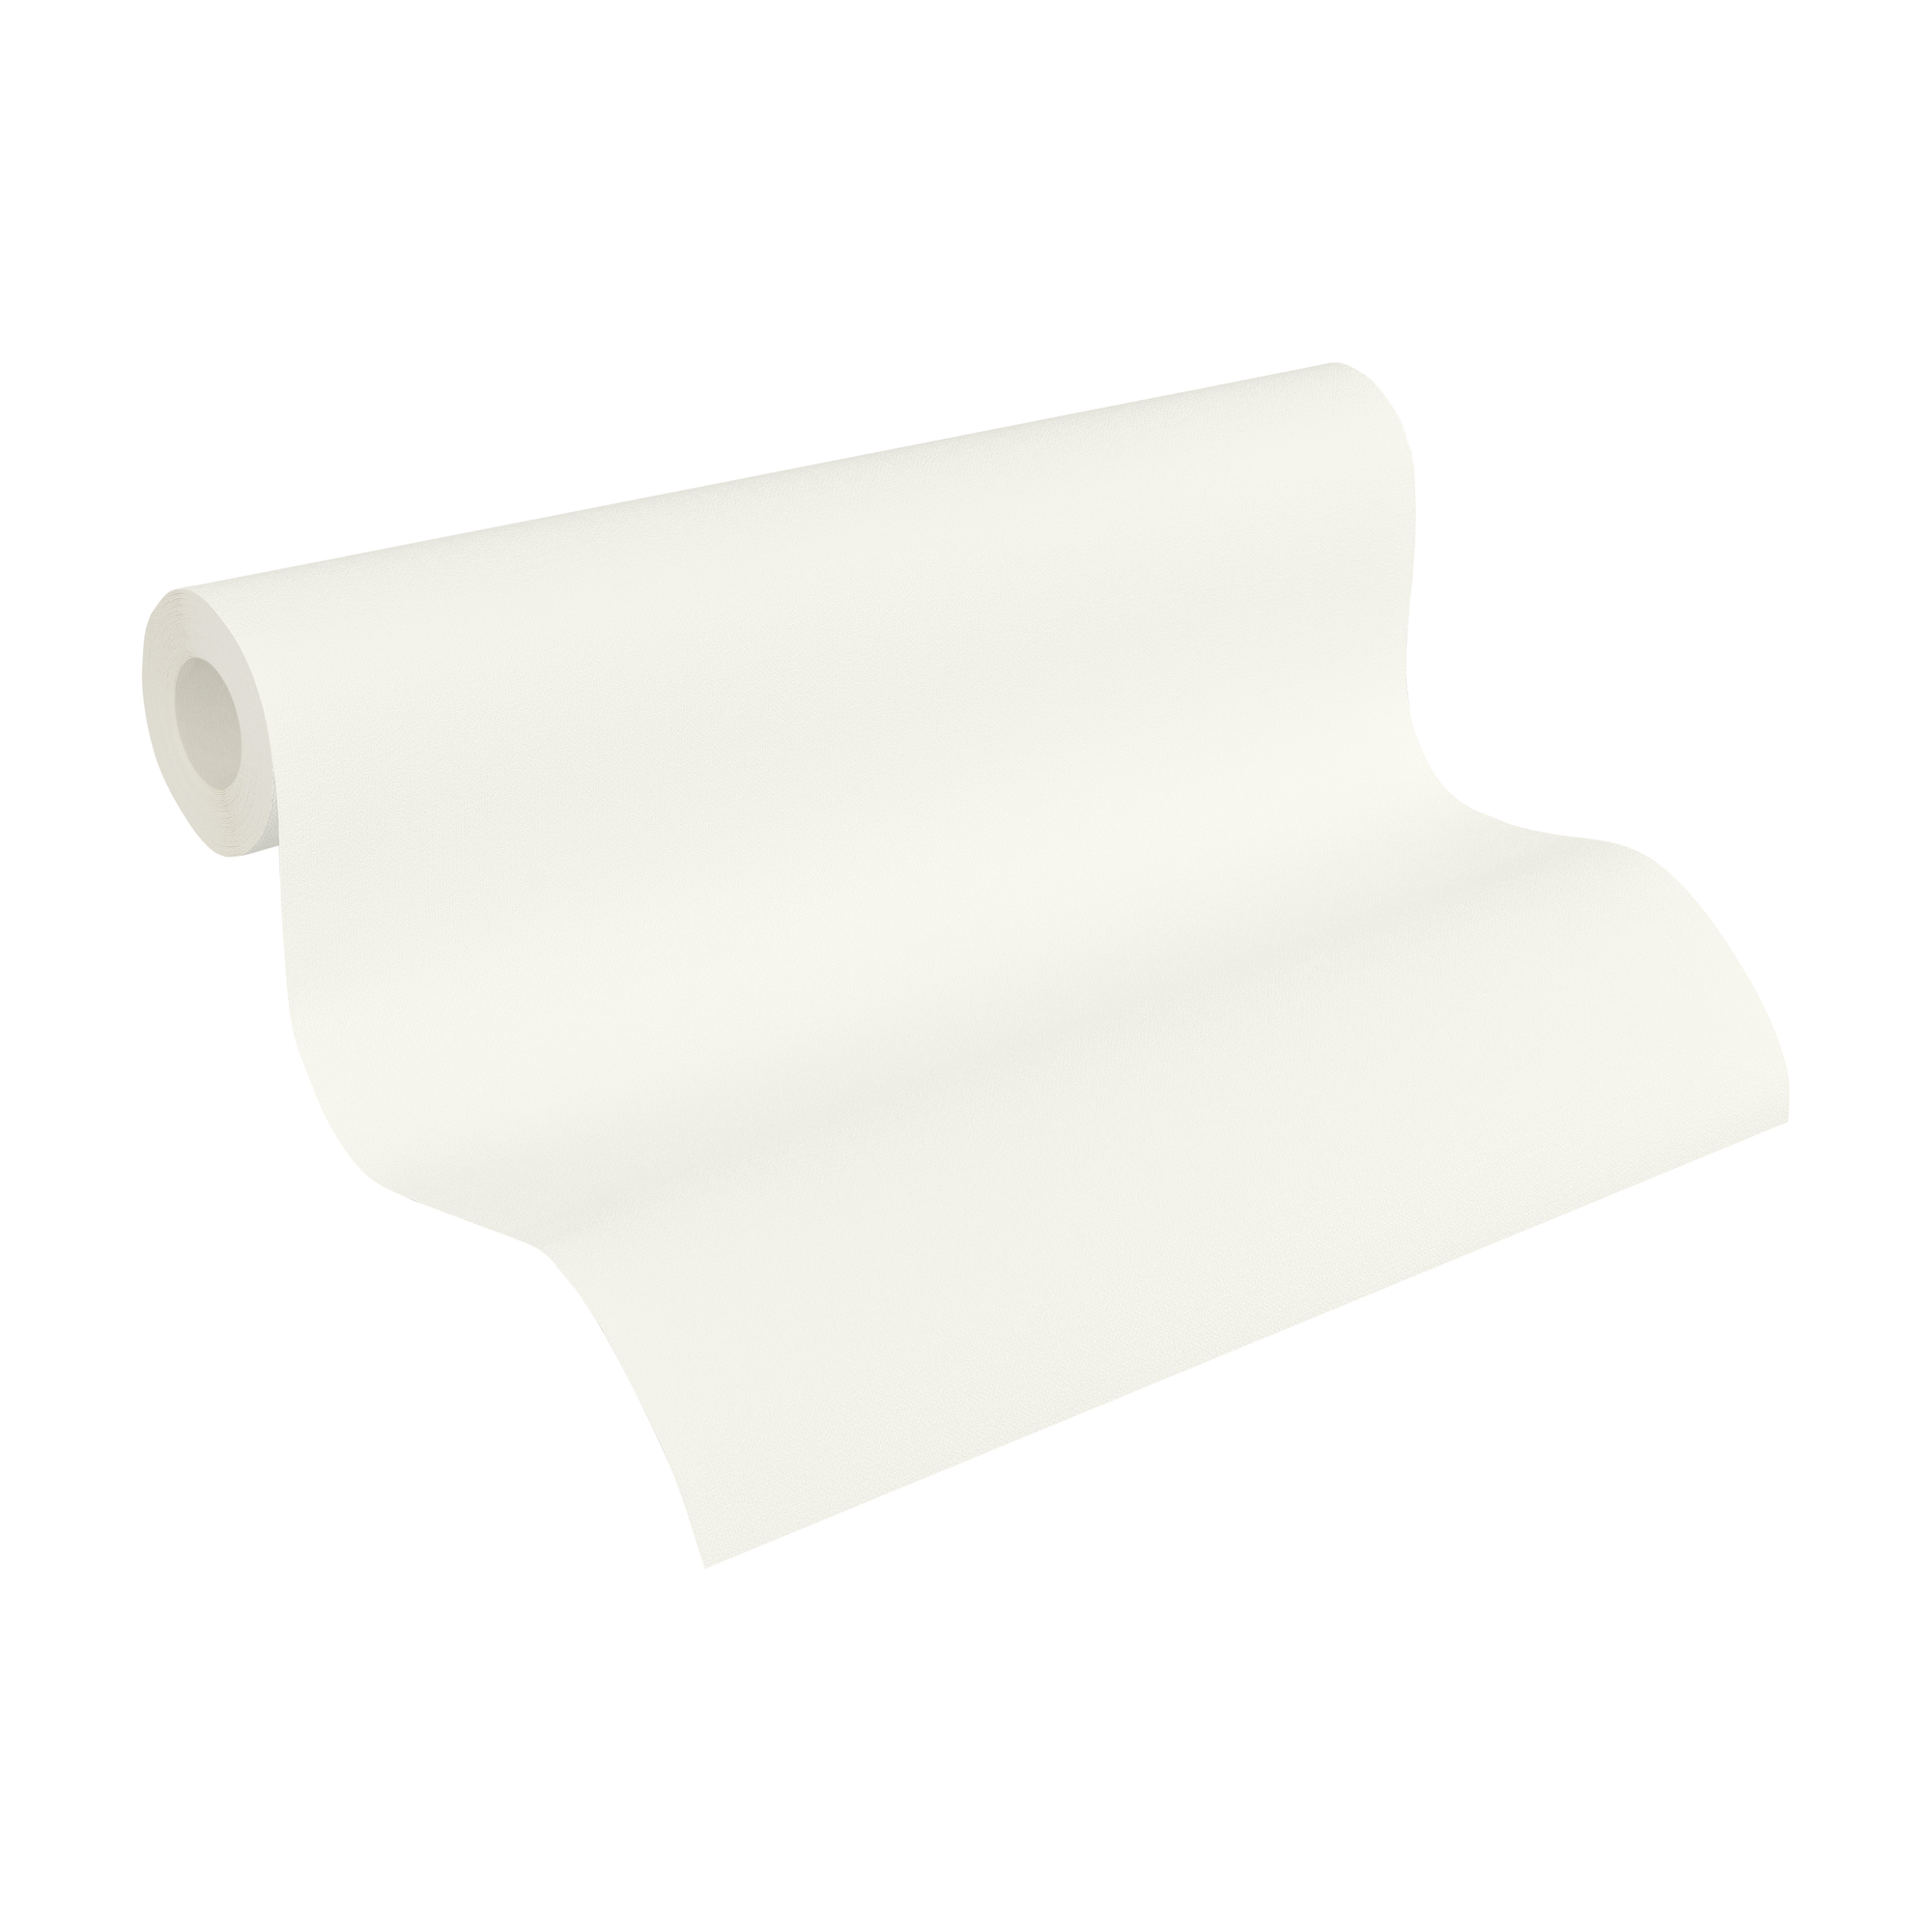 Vliestapete 'Shades of White' Uni Schaum weiß 10,05 x 0,53 m + product picture